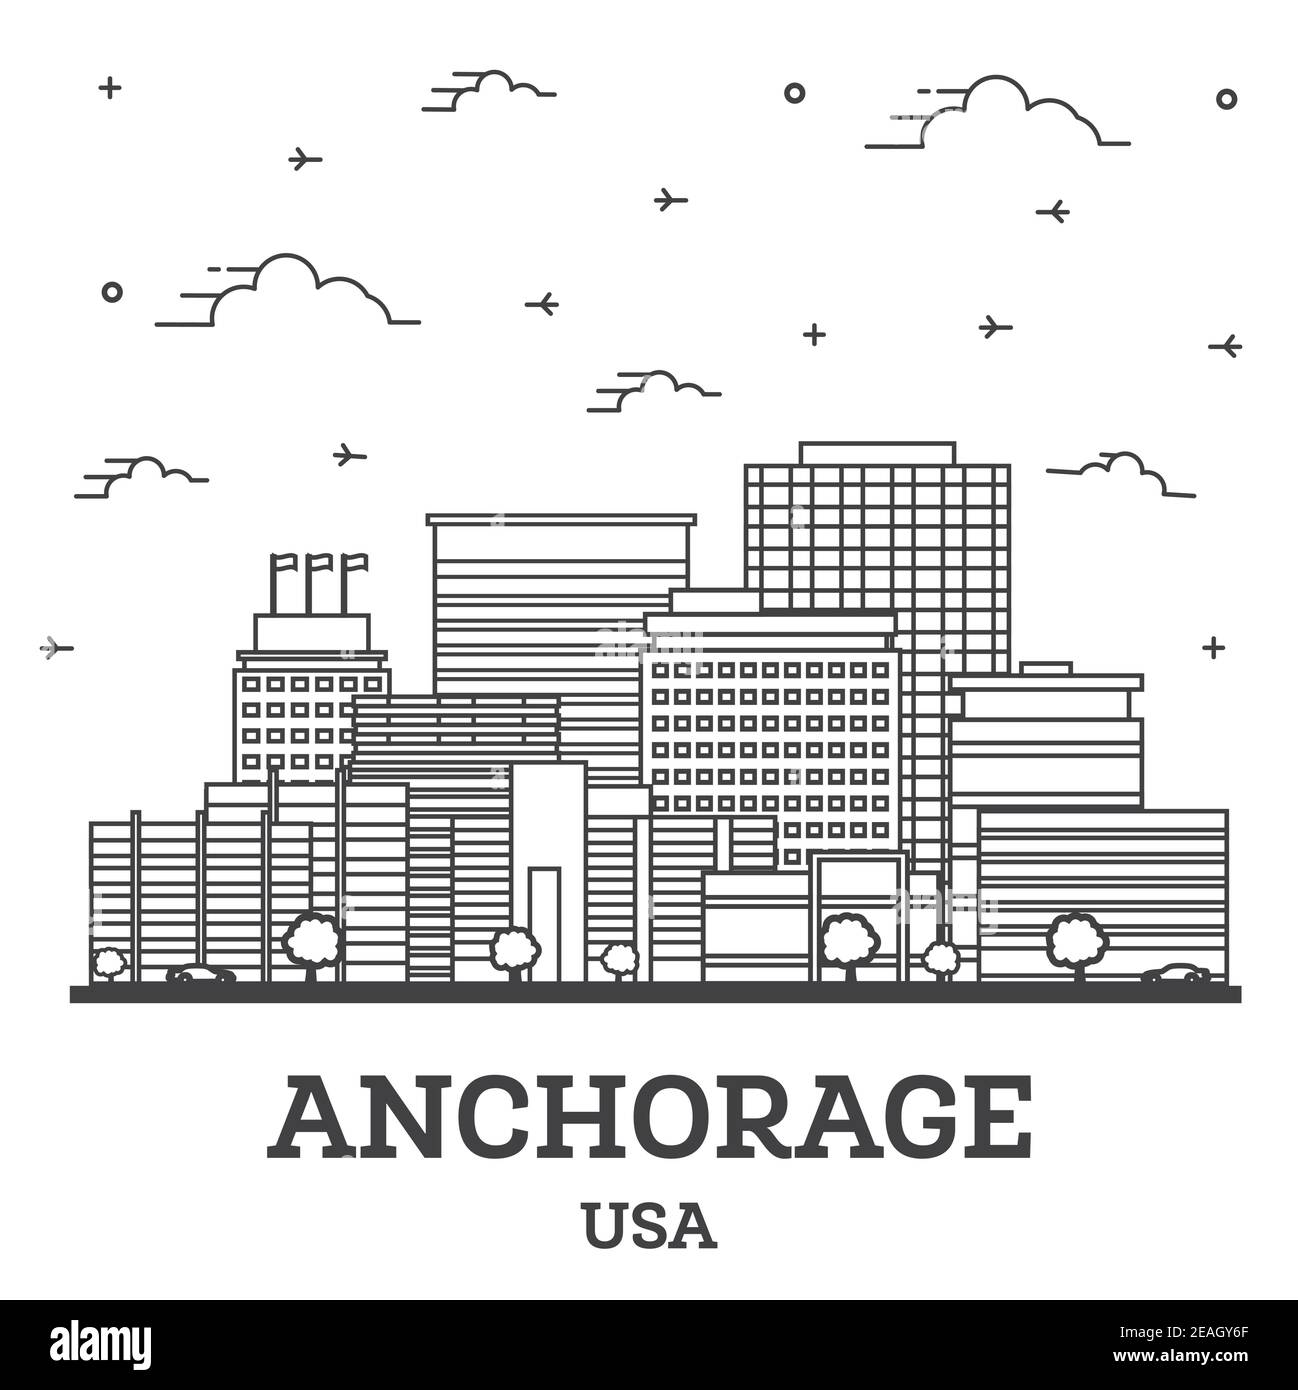 Gliederung Anchorage Alaska USA City Skyline mit modernen Gebäuden isoliert auf White. Vektorgrafik. Anchorage USA Stadtbild mit Wahrzeichen. Stock Vektor